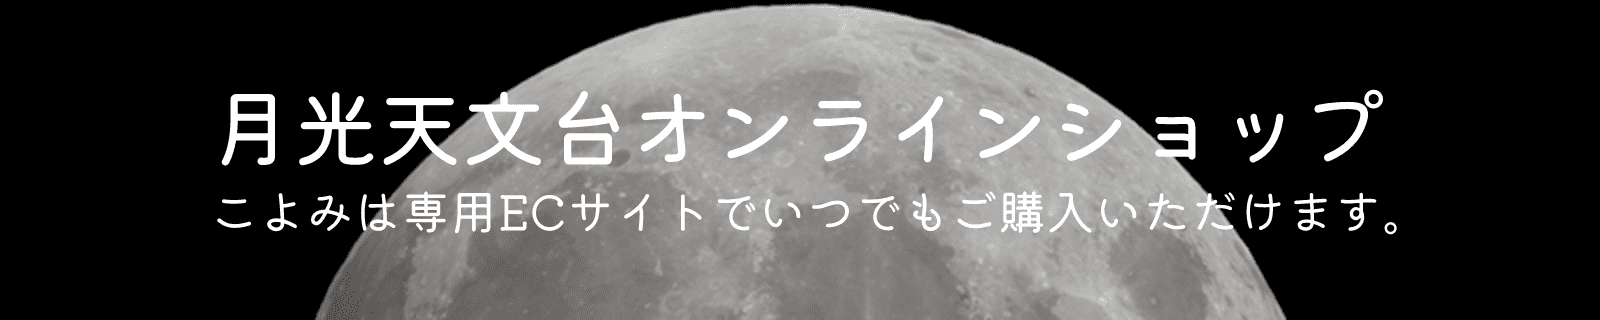 月光天文台オンラインショップ